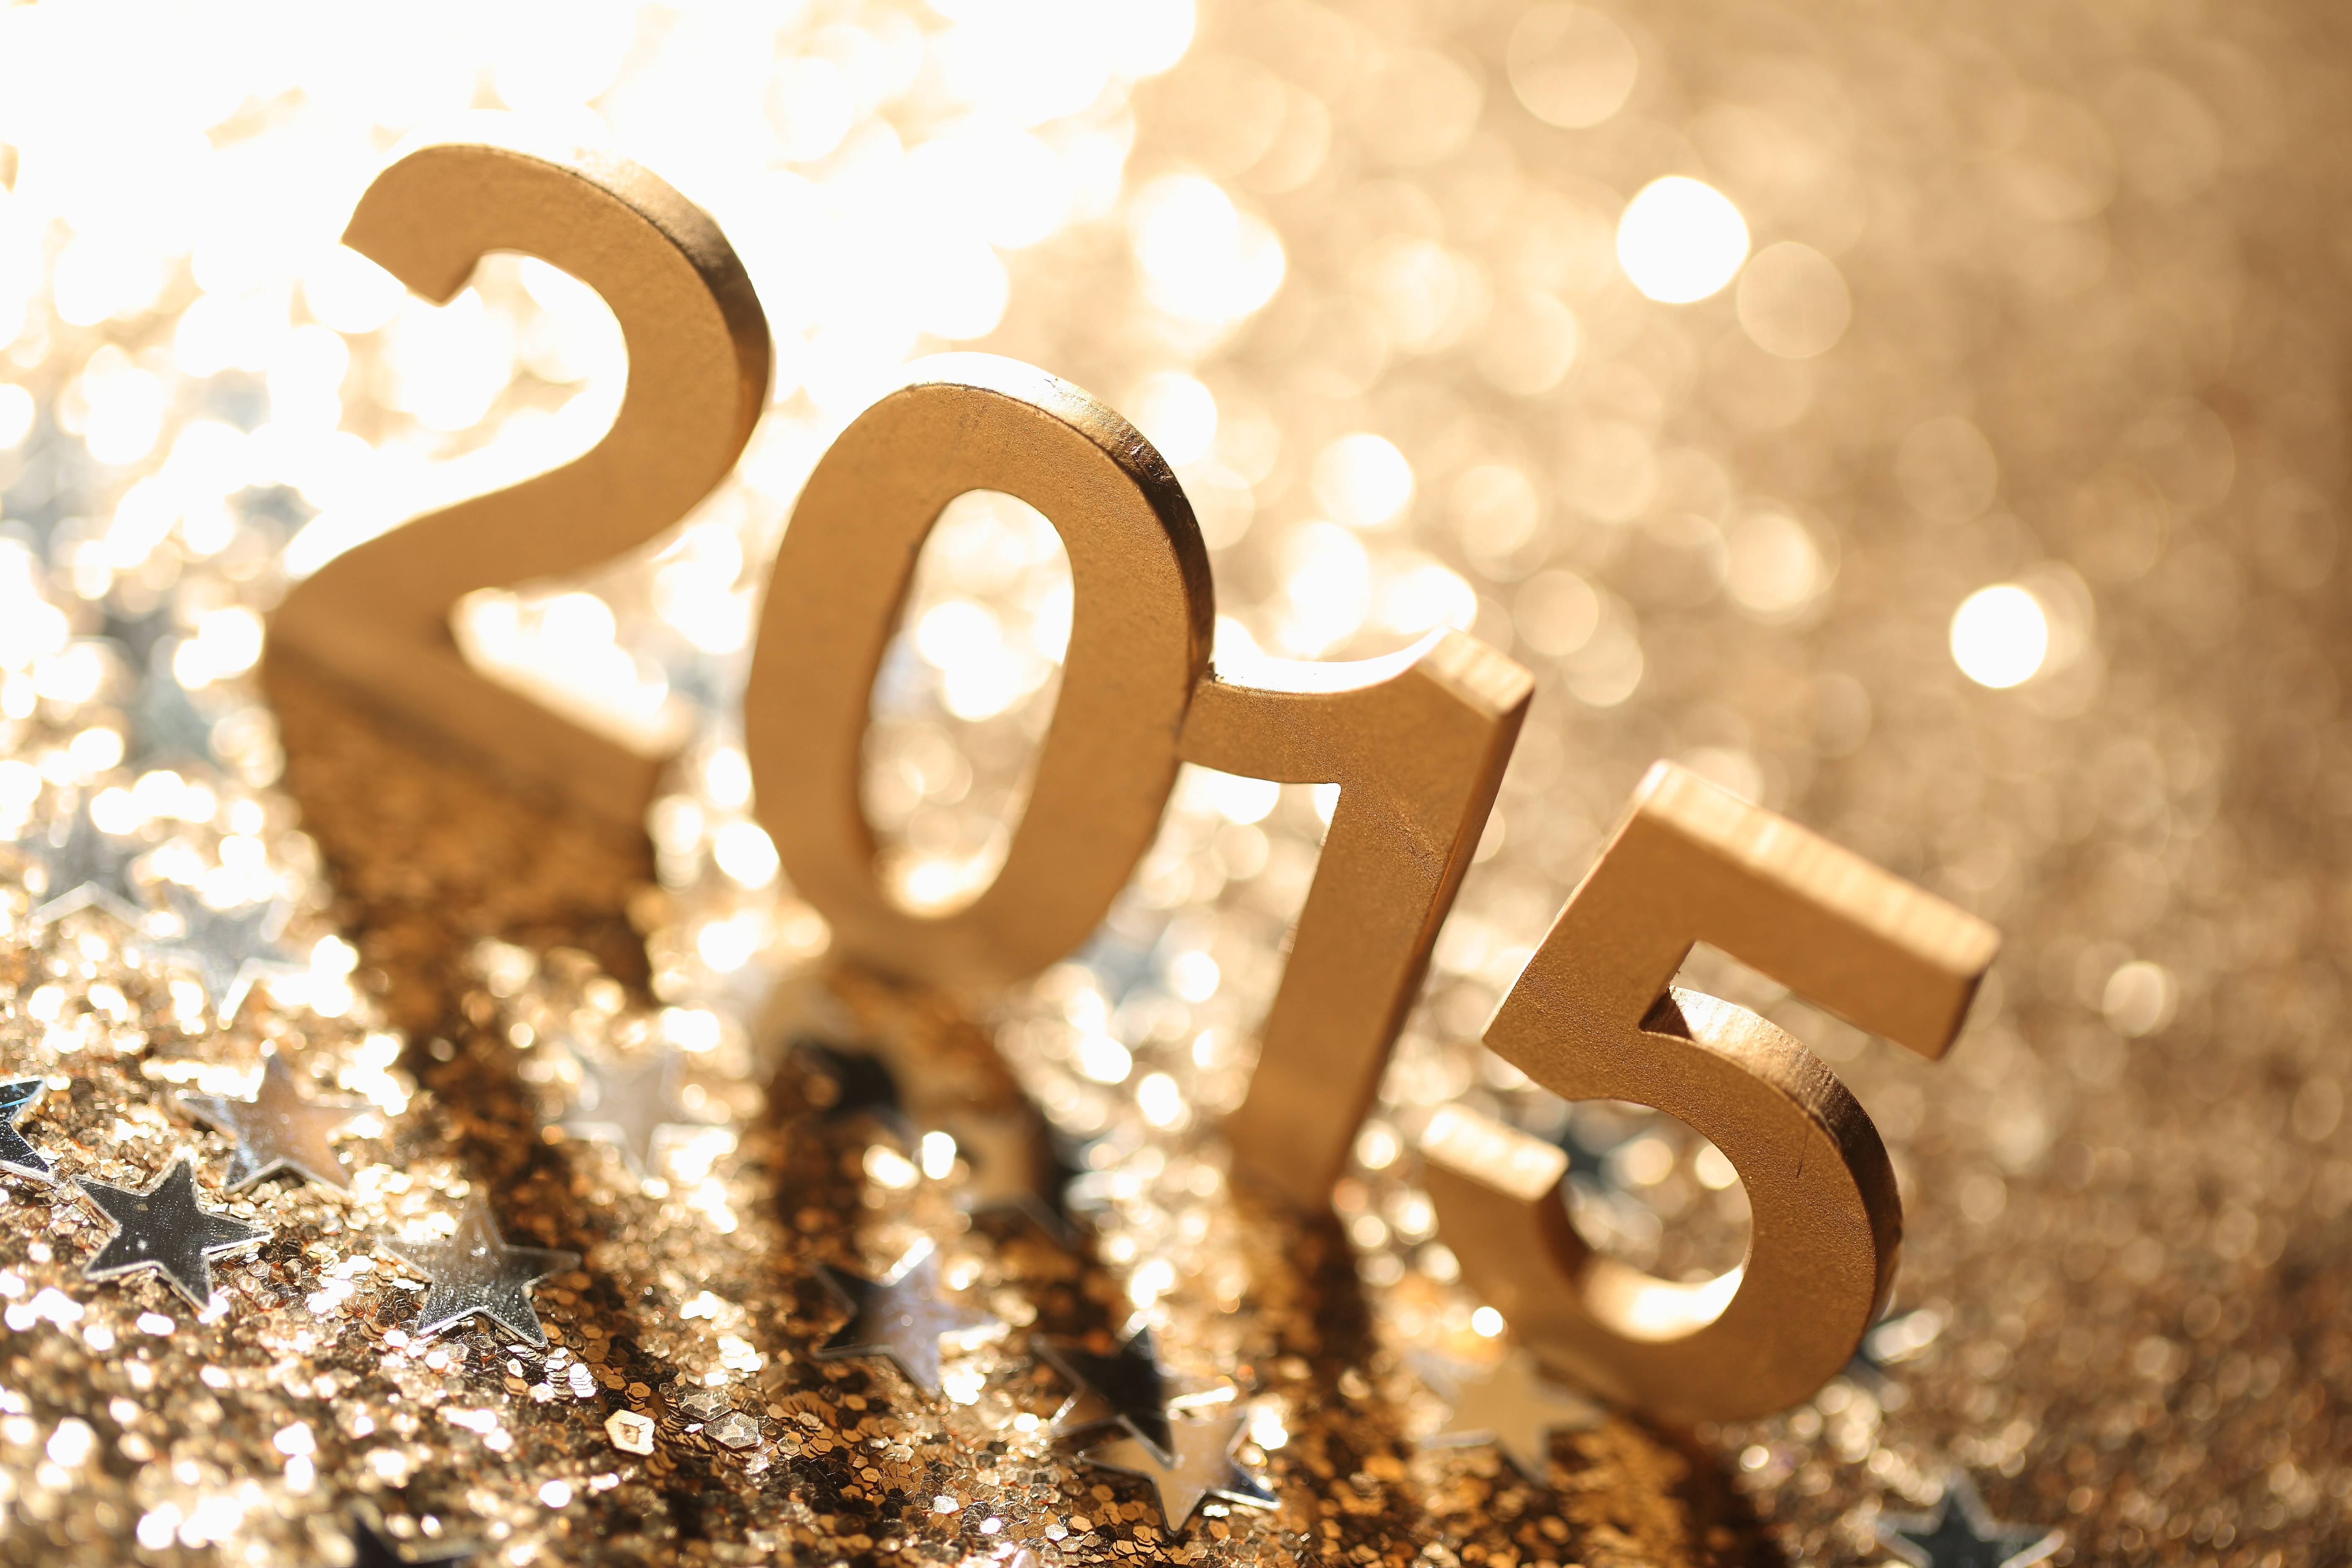 Картинки з. 2015 Год. Новый год 2015. Цифры на новый год. Картинка с новым 2015.